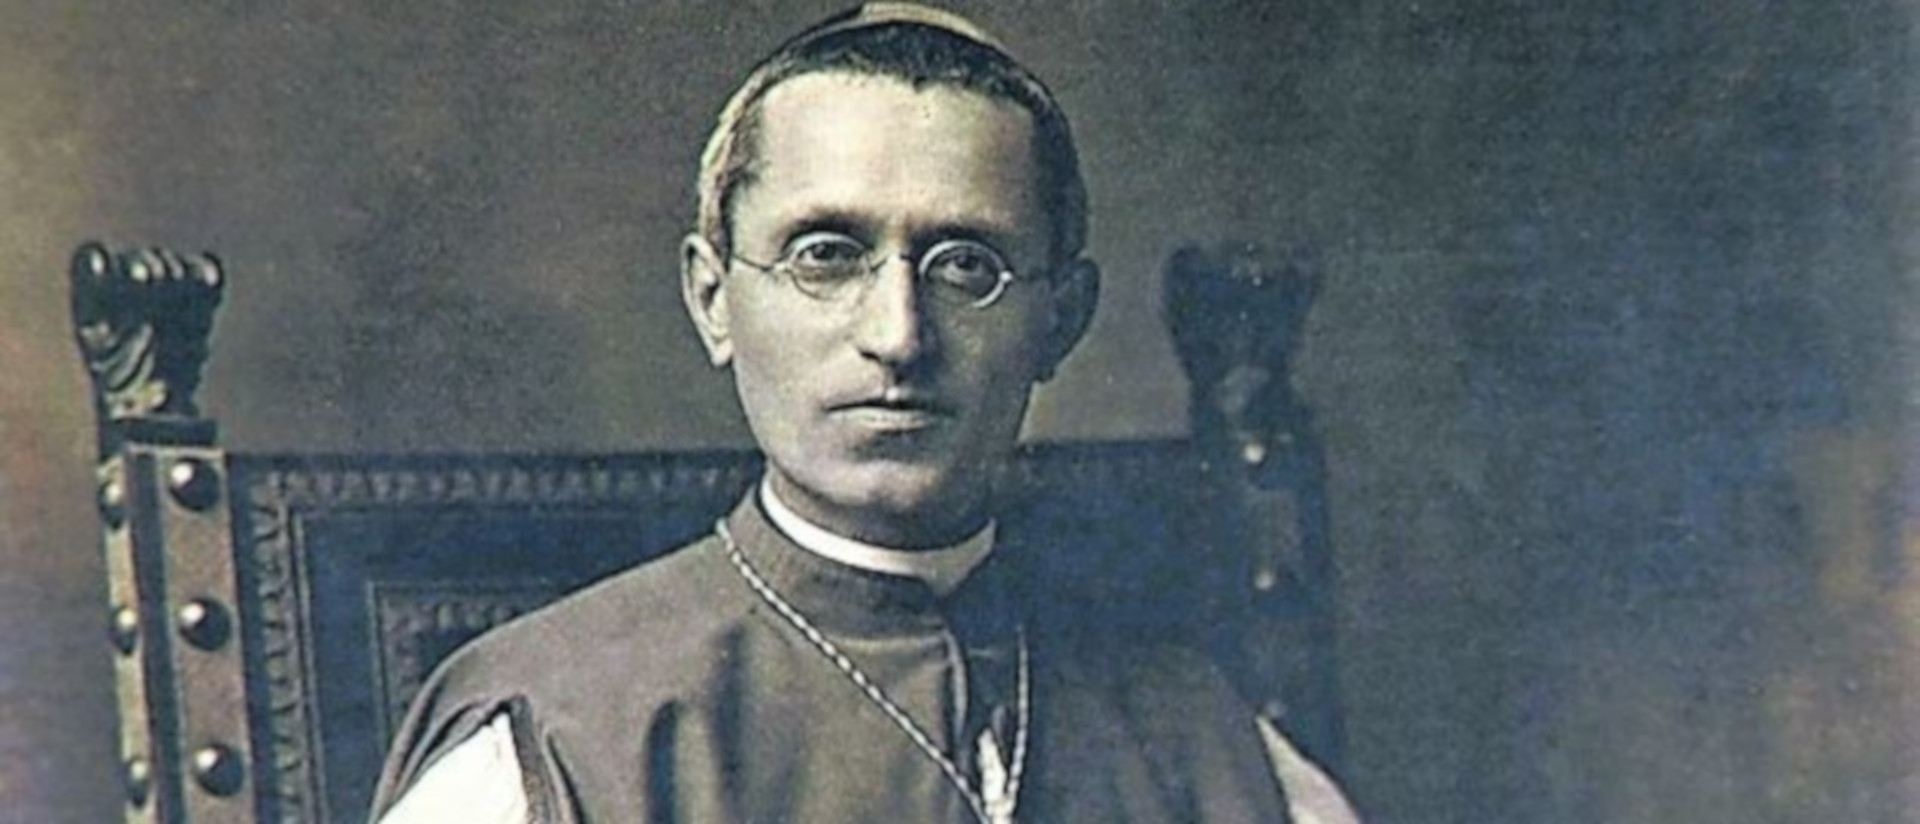 Mgr Aurelio Bacciarini fut évêque de Lugano de 1917 à 1935 | domaine public